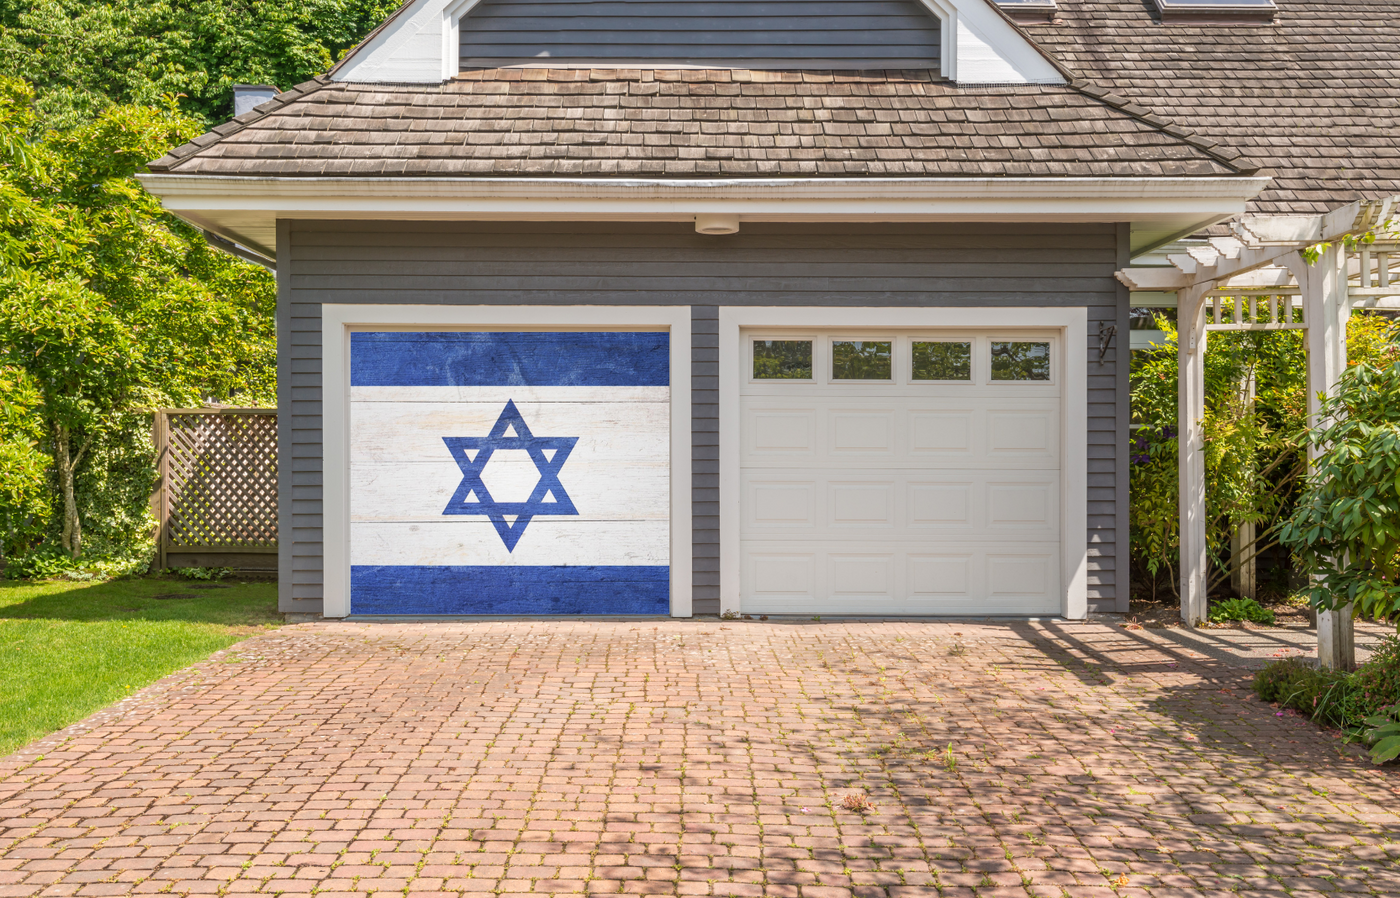 Israel Flag On Wooden Garage Door Cover